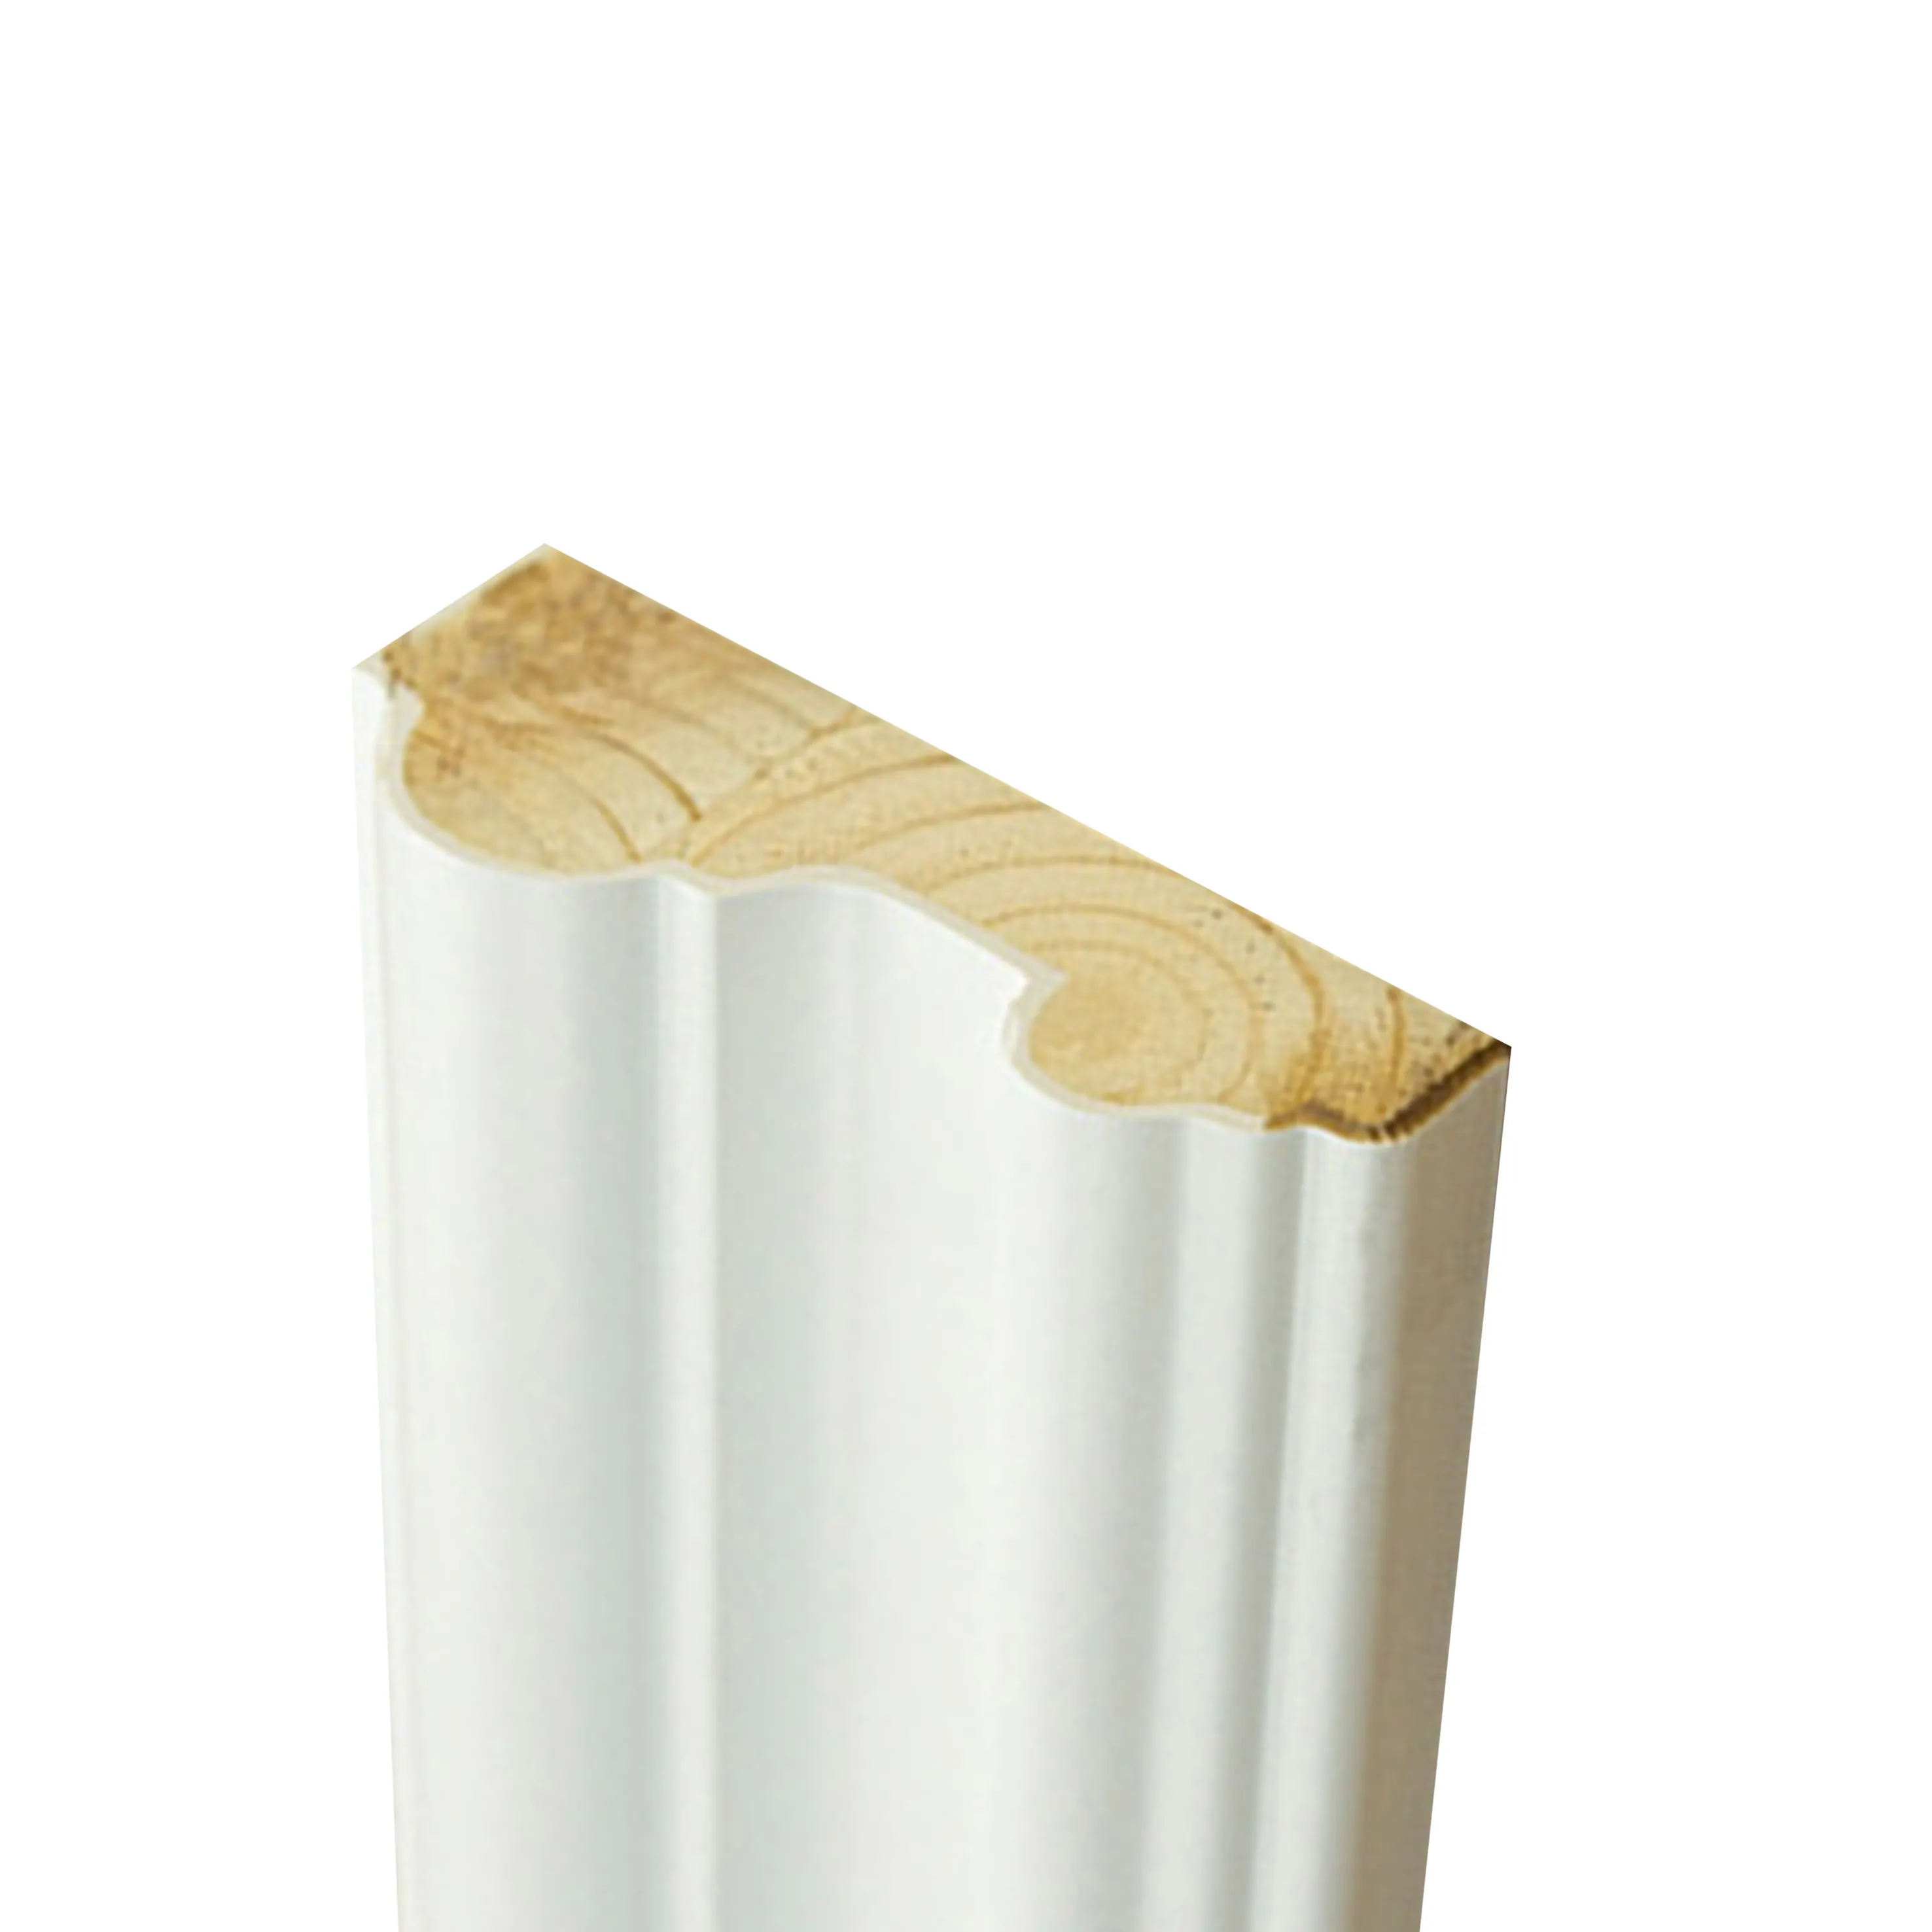 قولبة كورنيش سفلية من الخشب المصمت بلوحة زخرفية بيضاء للجدار خشبية مصنوعة من الجبس